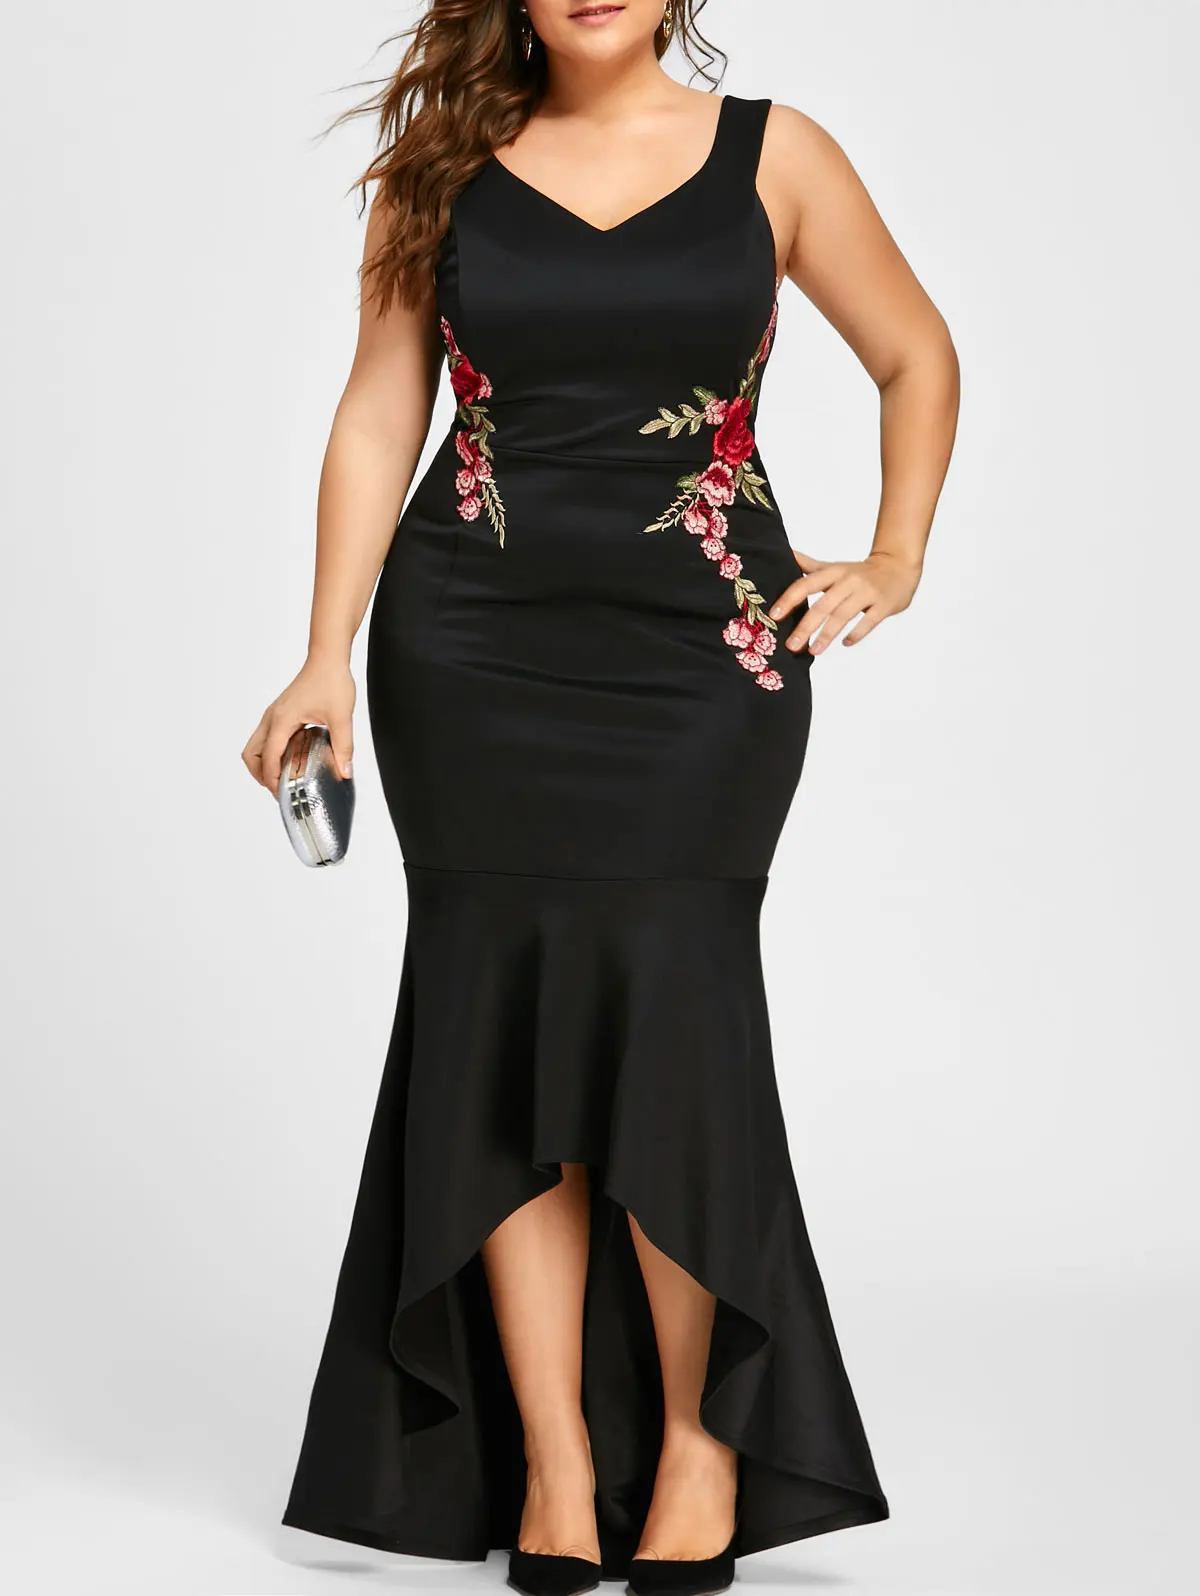 ROSEGAL размера плюс без рукавов вечерние платье с русалочкой вышивка Макси платье пикантные черные сапоги V образным вырезом элегантное платье Платья для вечеринок Vestidos - Цвет: black